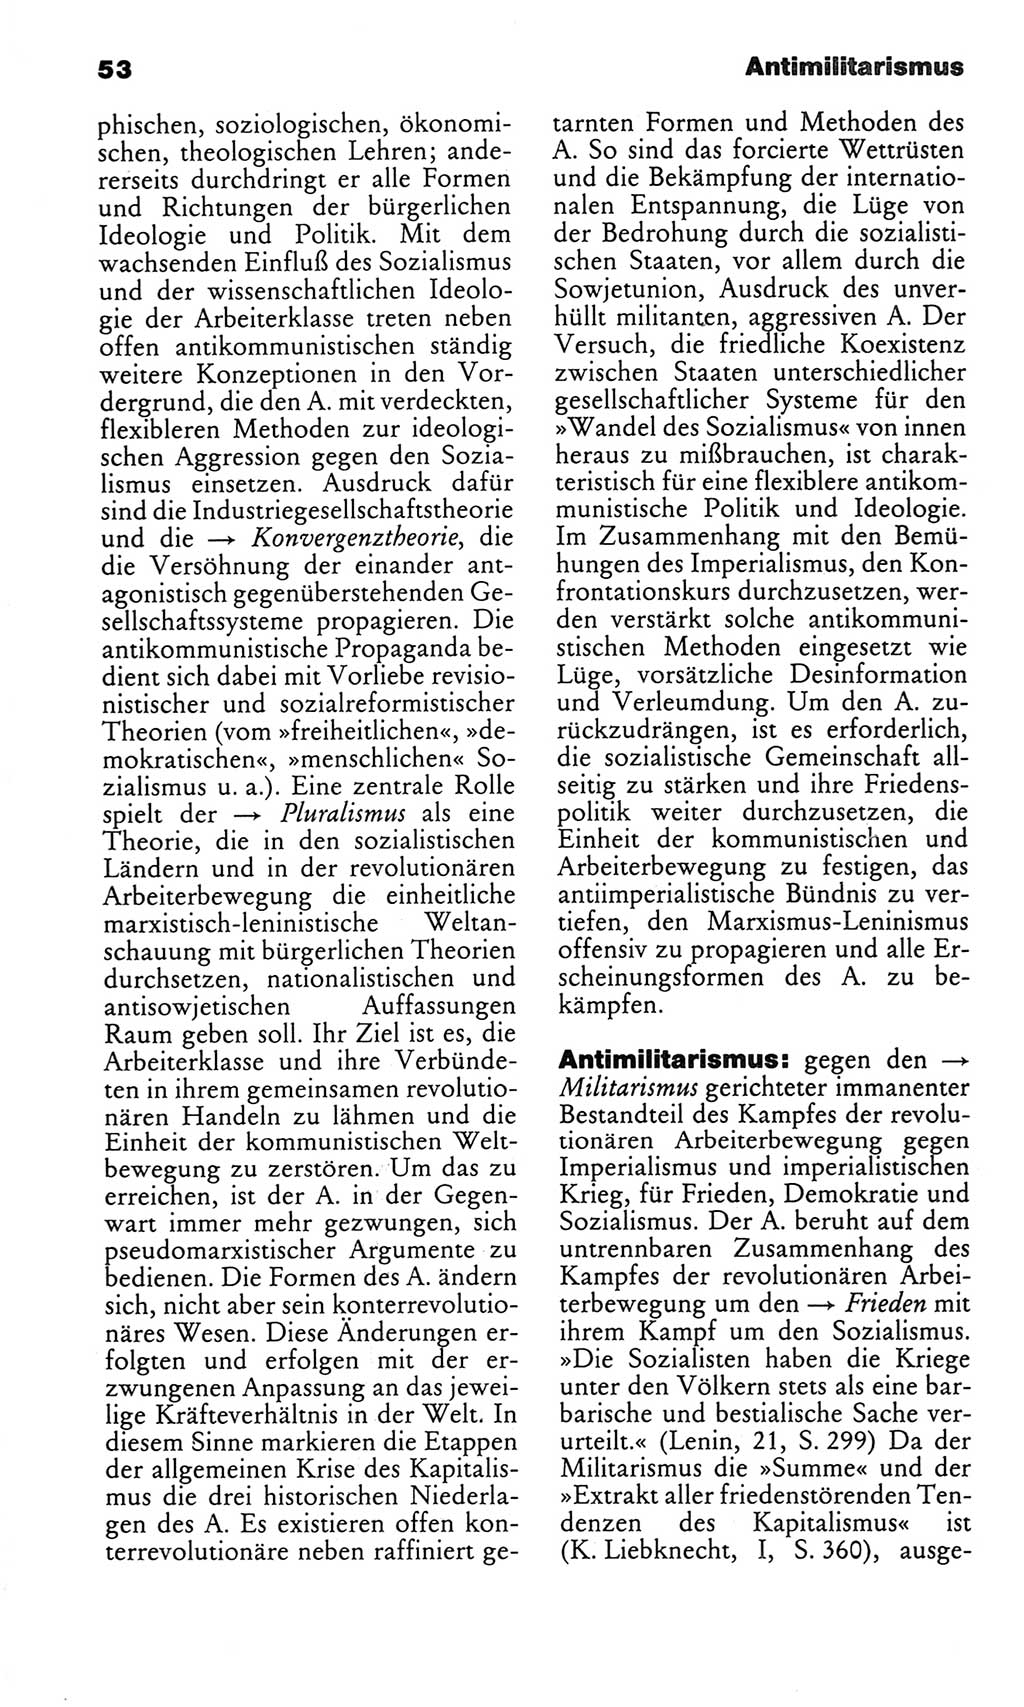 Kleines politisches Wörterbuch [Deutsche Demokratische Republik (DDR)] 1986, Seite 53 (Kl. pol. Wb. DDR 1986, S. 53)